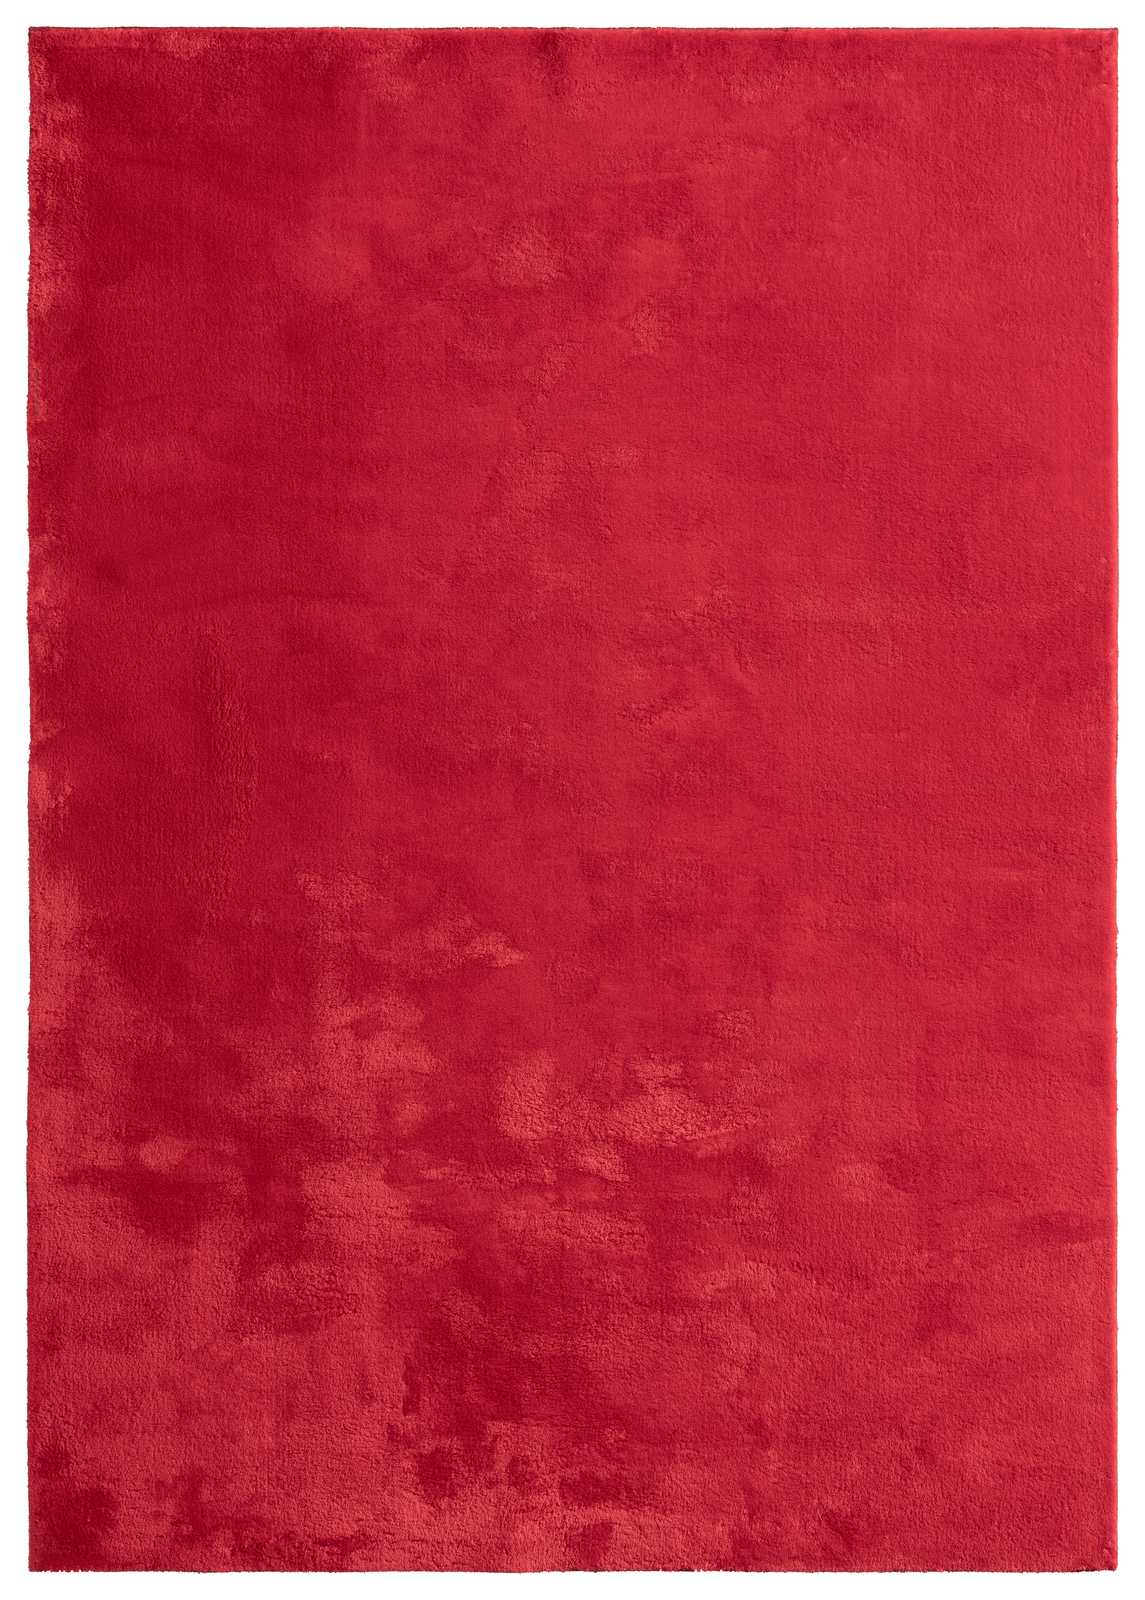             Besonders weicher Hochflor Teppich in Rot – 170 x 120 cm
        